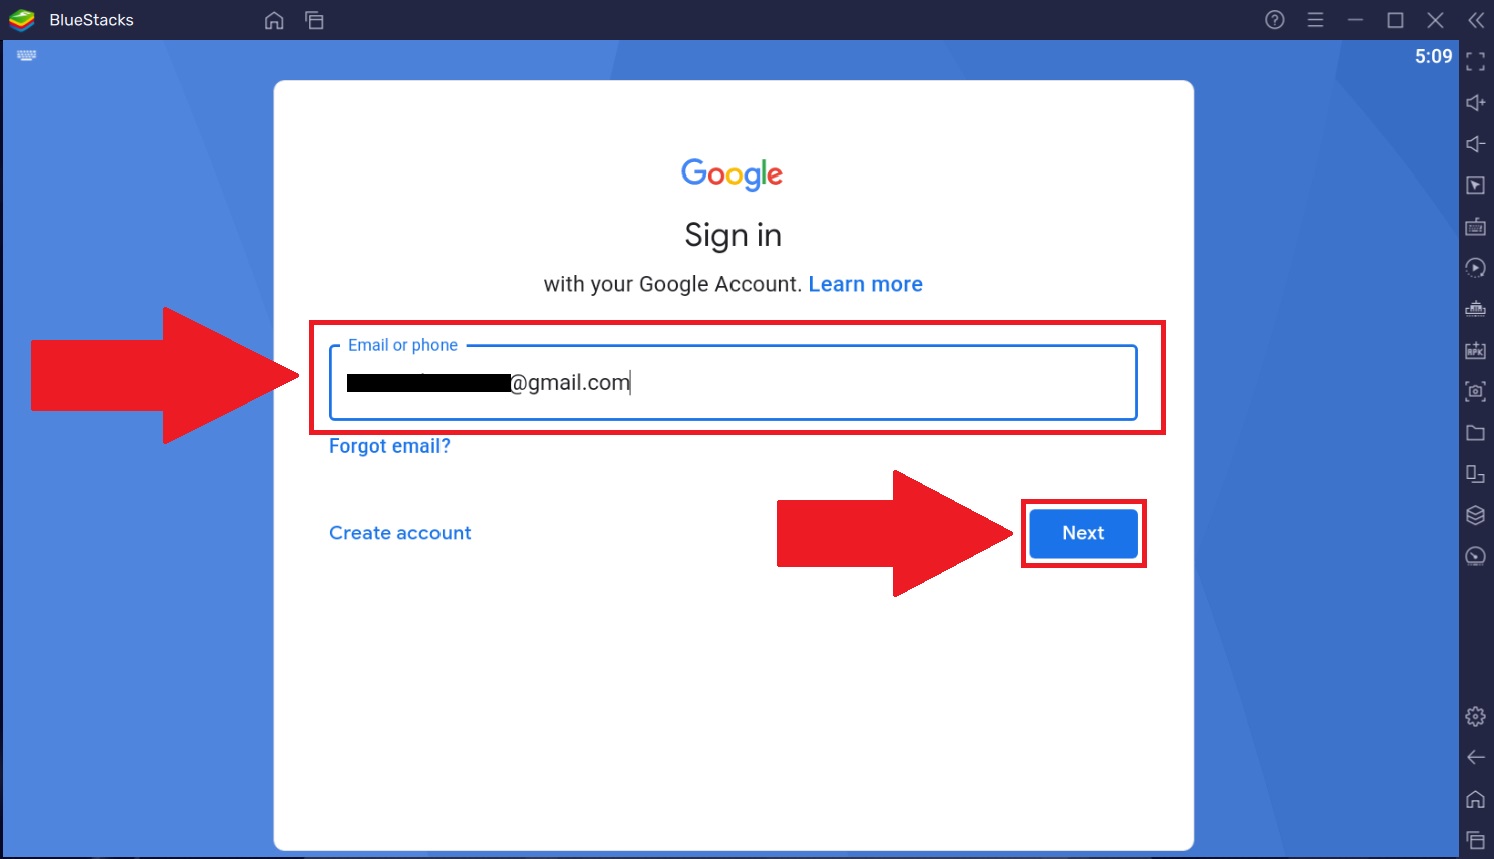 Gmail.com How to